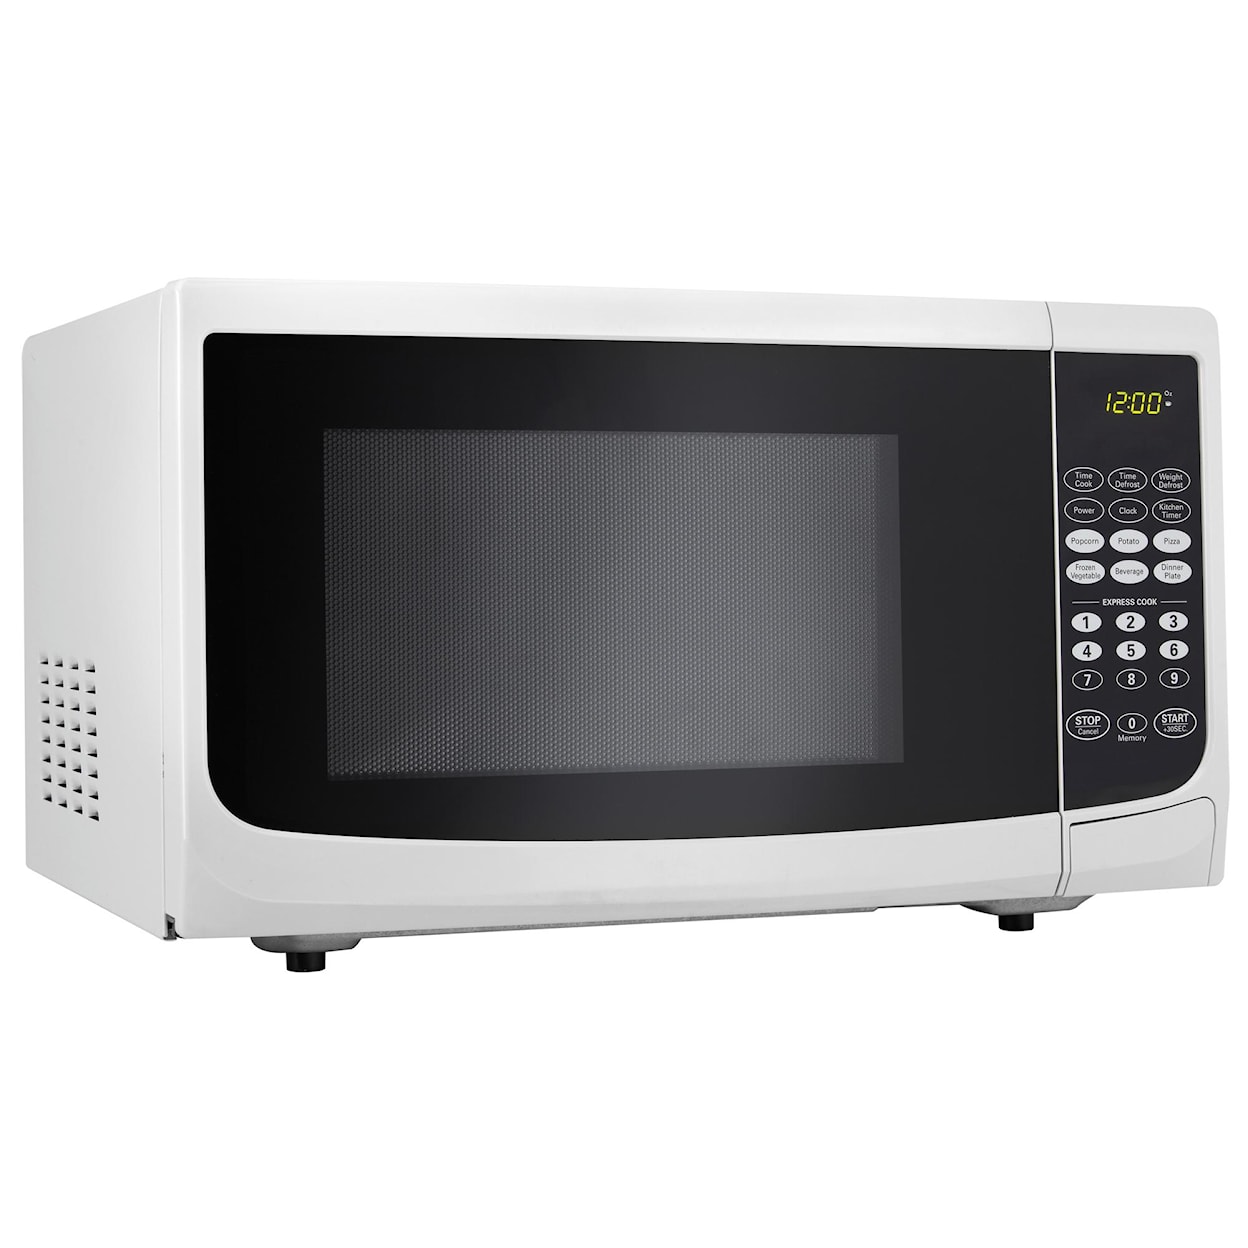 Danby Microwaves .7 Cu. Ft. Countertop Microwave